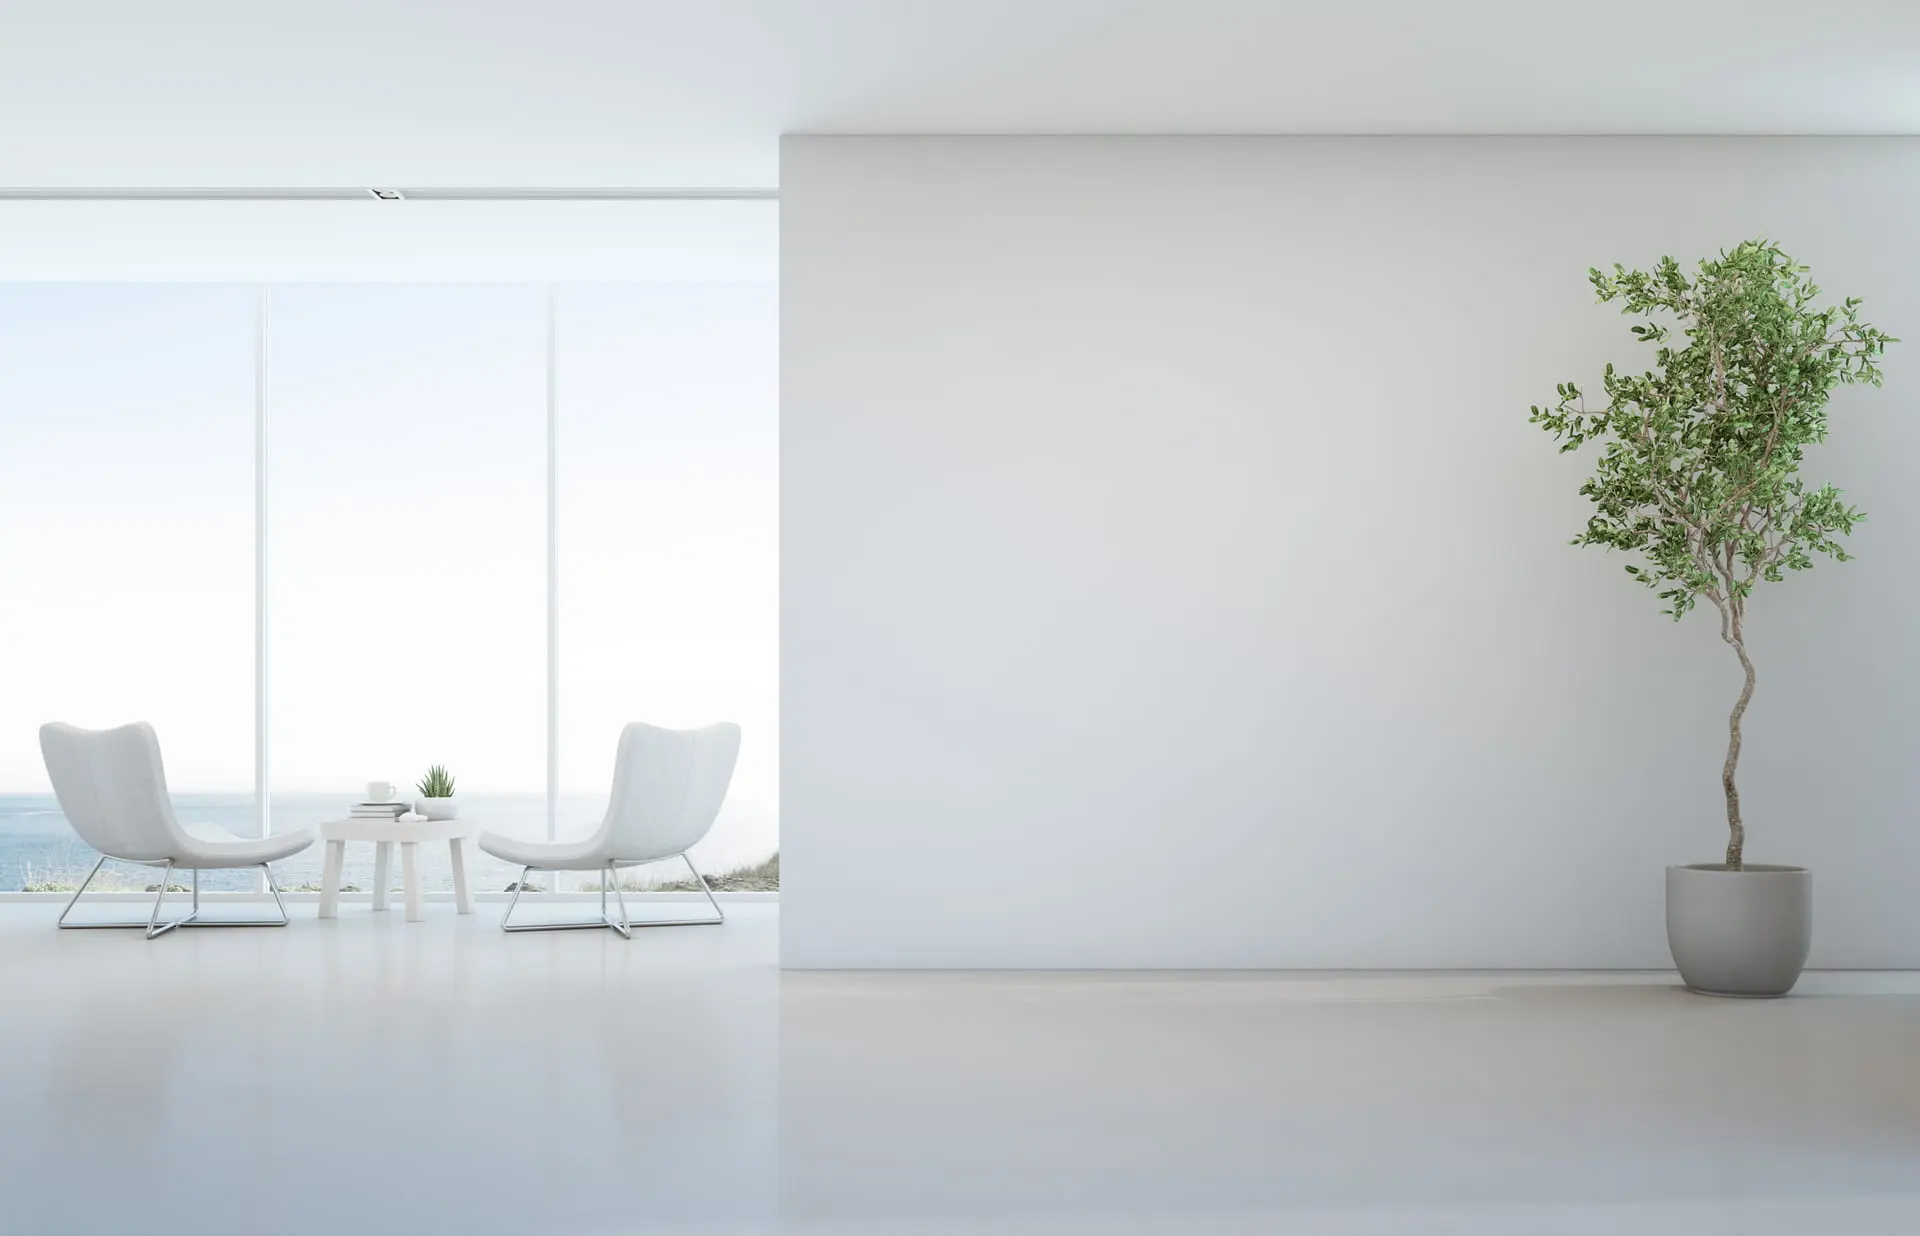 Salon w minimalistycznym stylu w jasnych kolorach